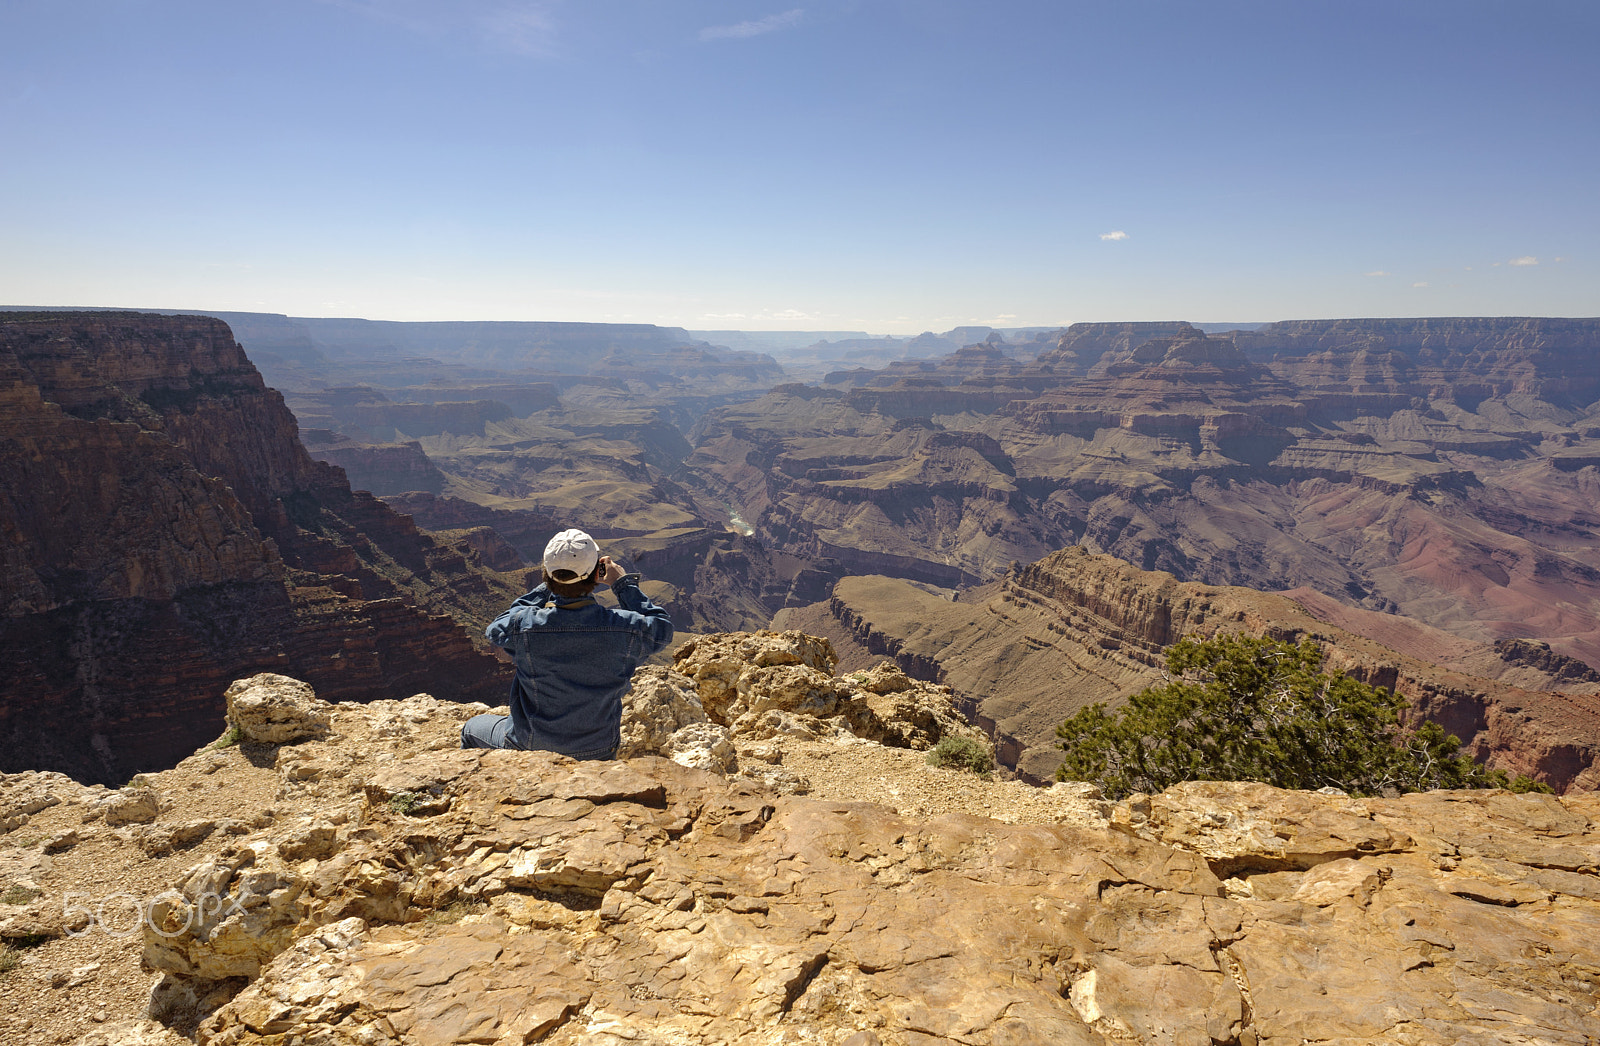 Nikon D700 sample photo. Man at the edge of grand canyon photography